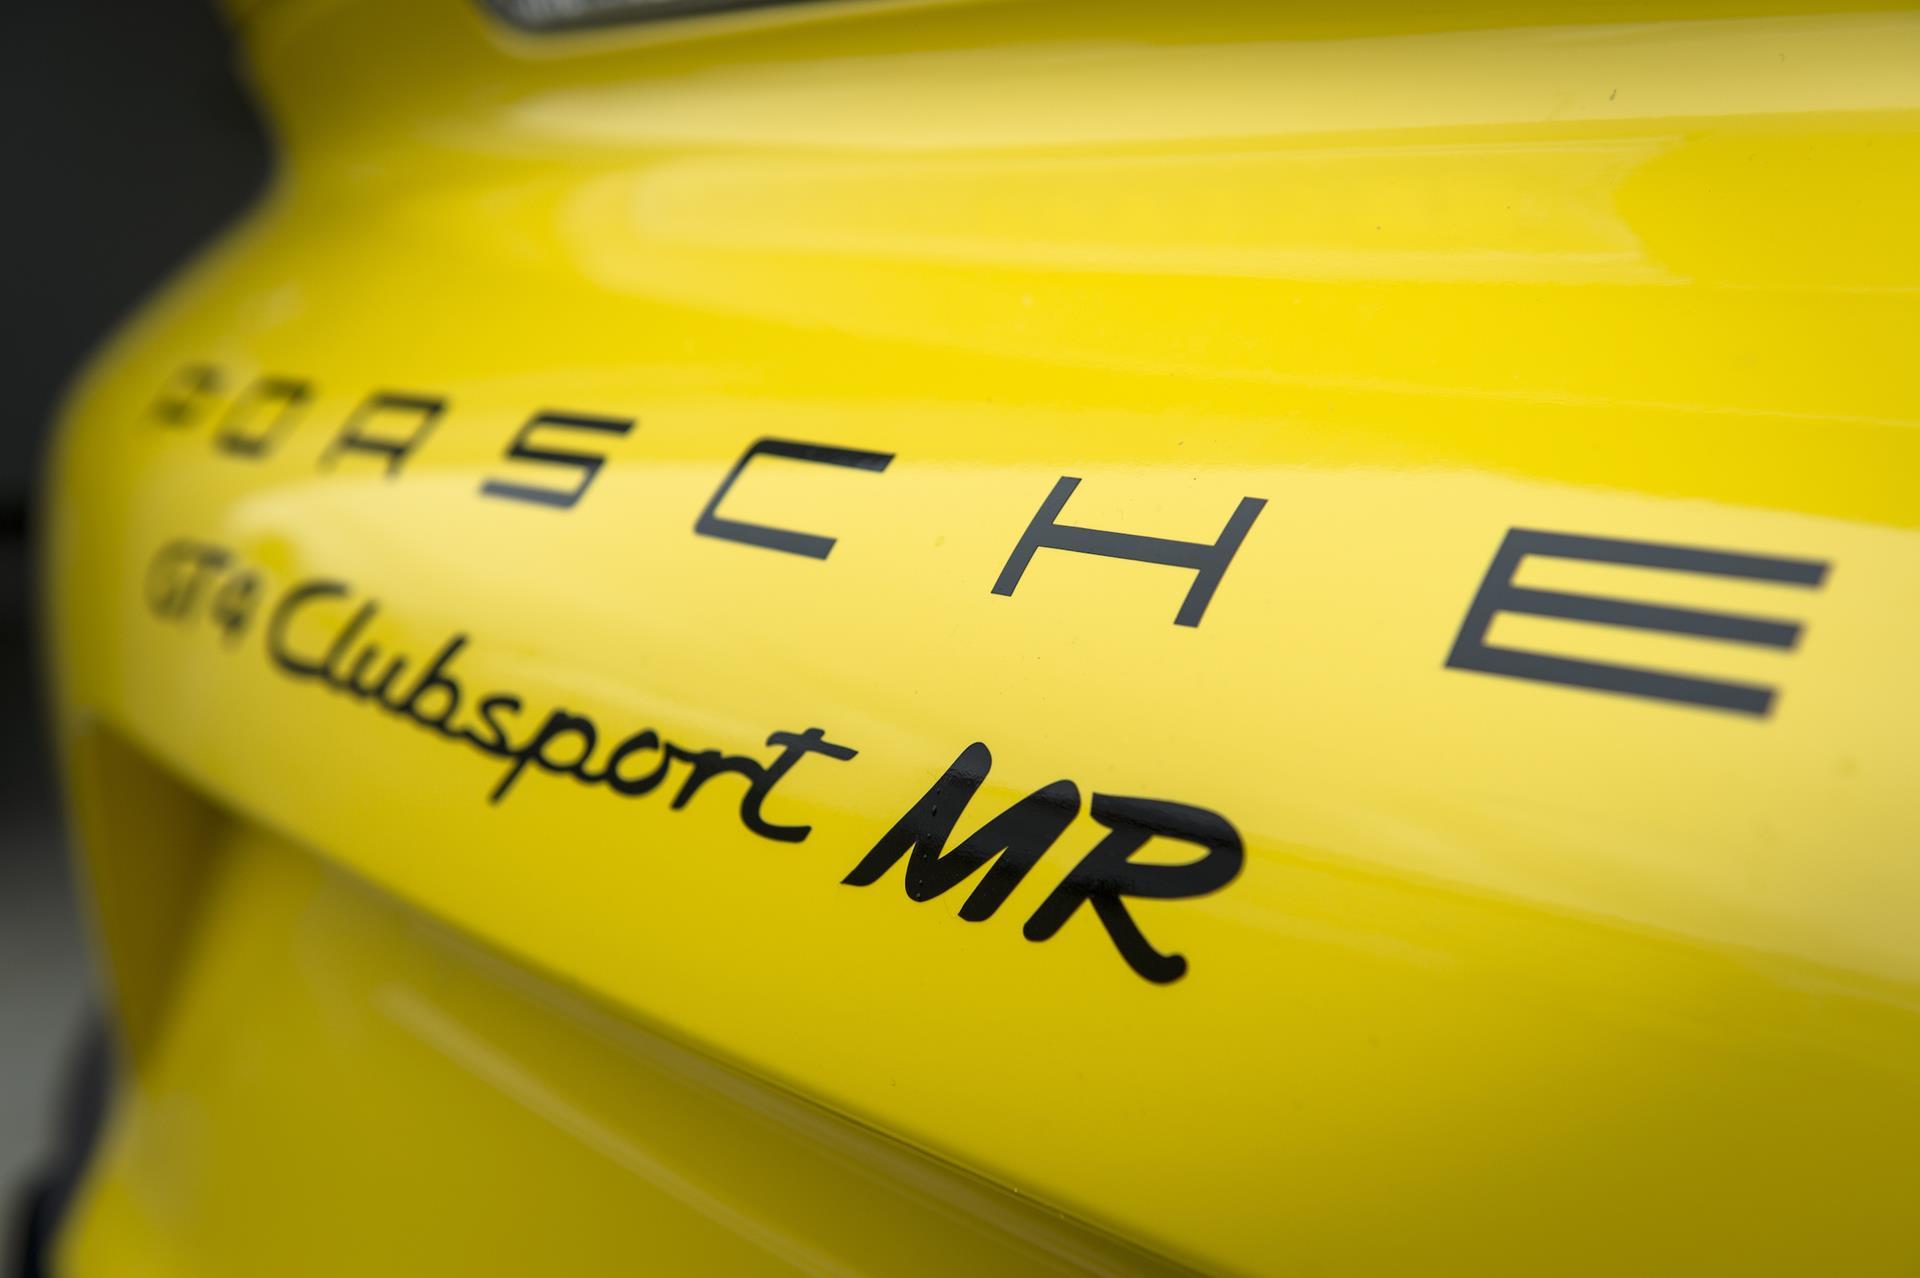 2016 Porsche Cayman GT4 Clubsport MR